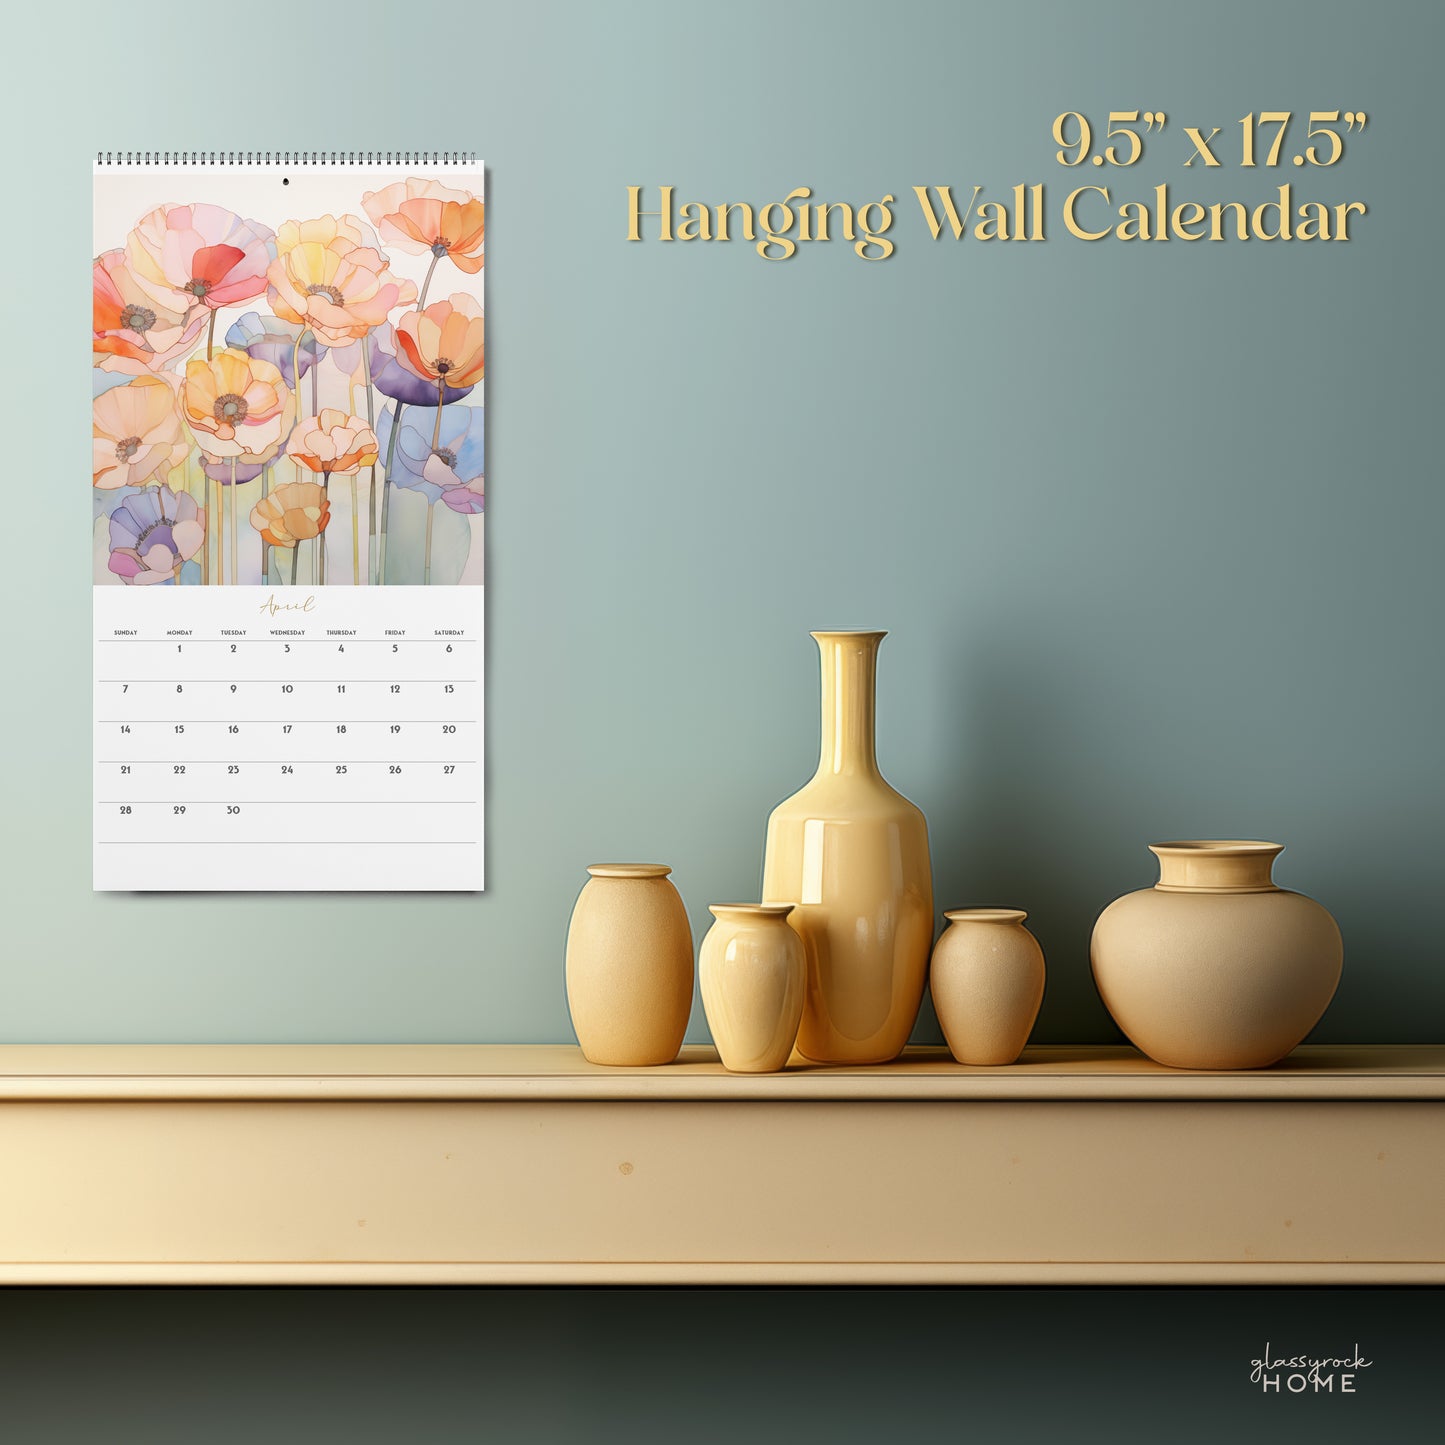 2024 Calendar: Poppies